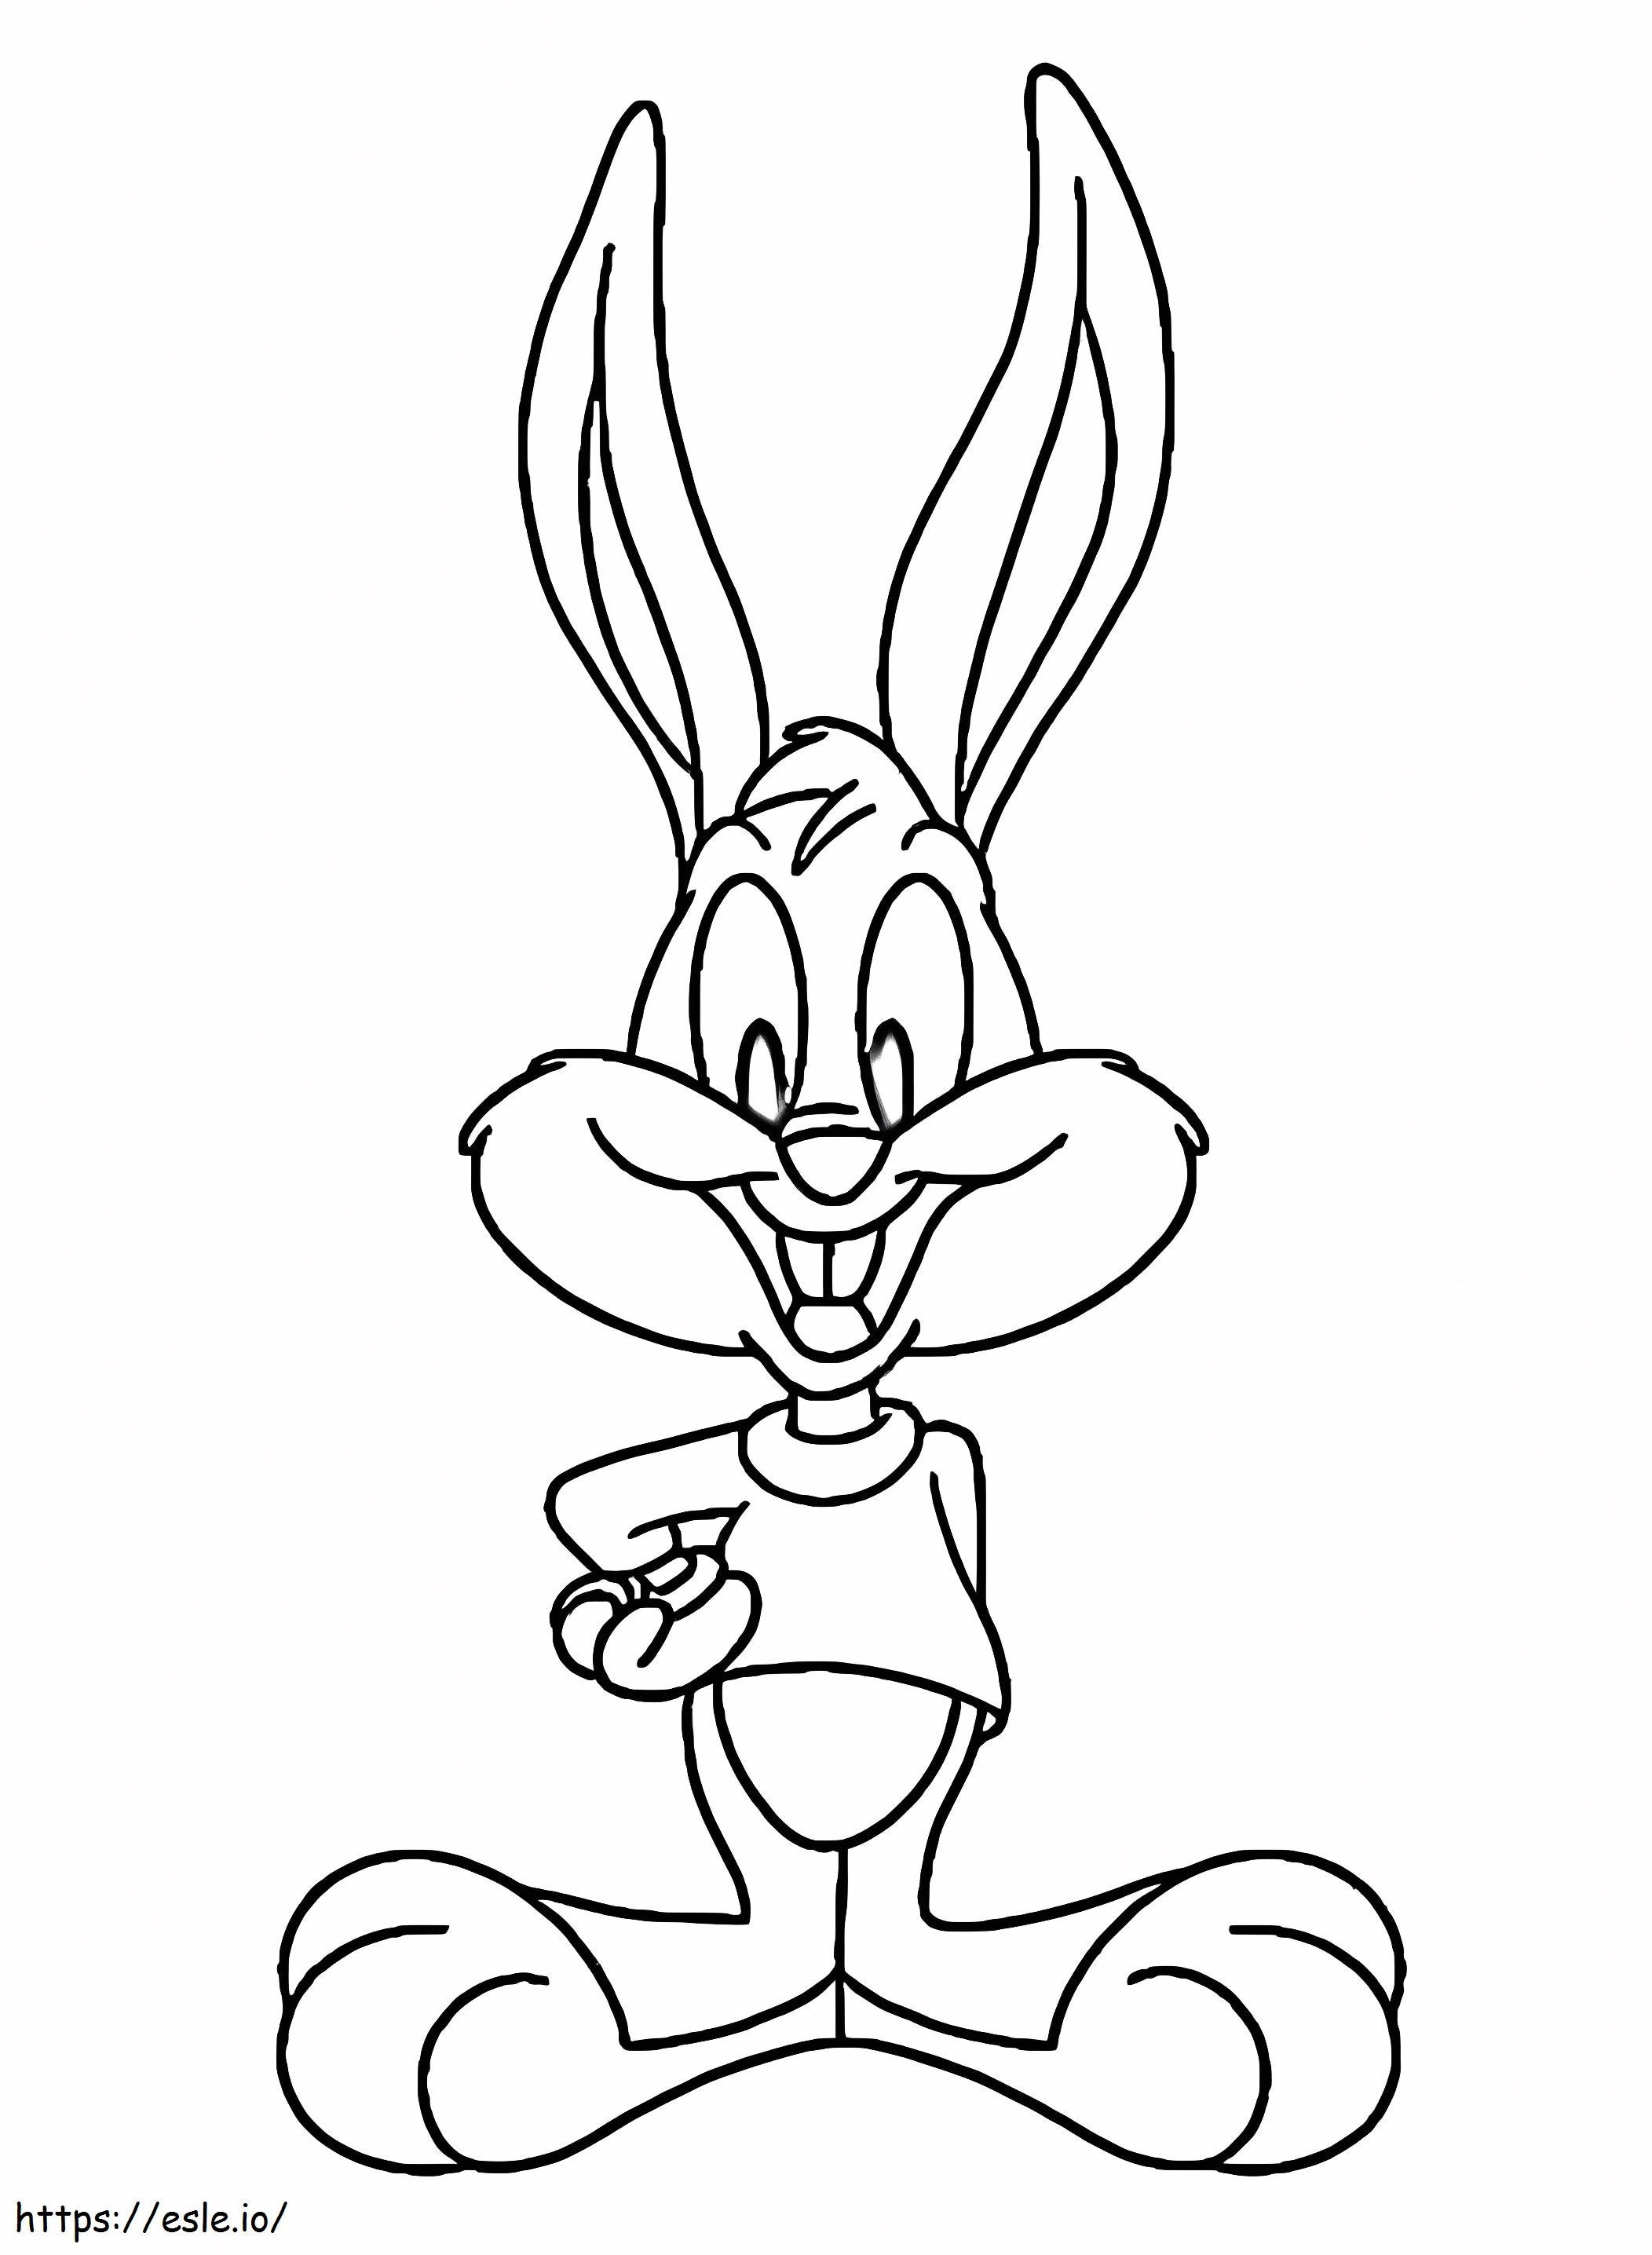 Prietenosul Buster Bunny de colorat